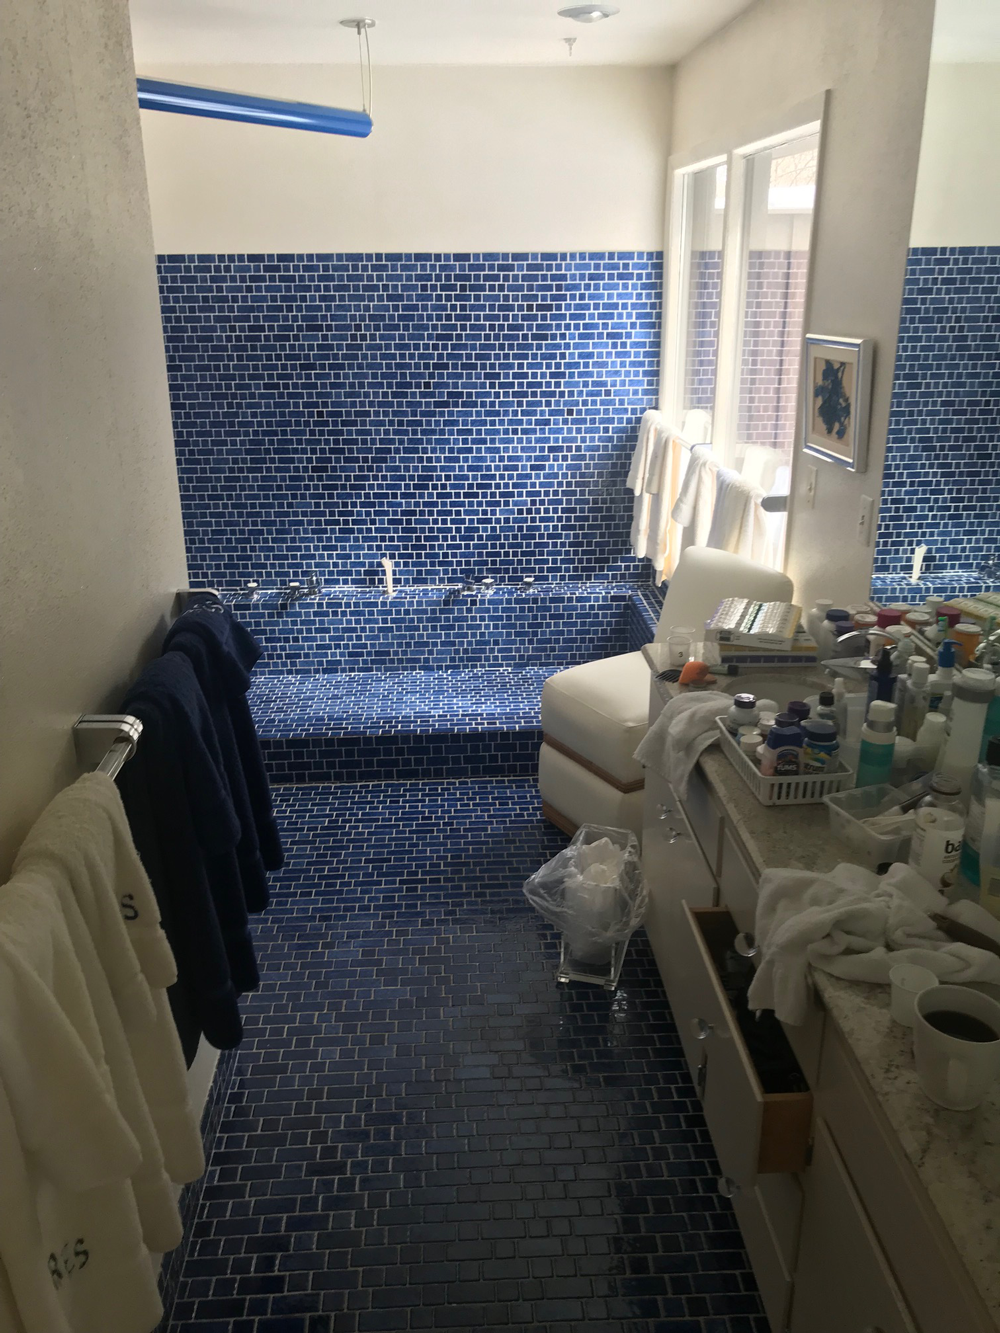 Bayside-Bathroom-Remodel-Before.png